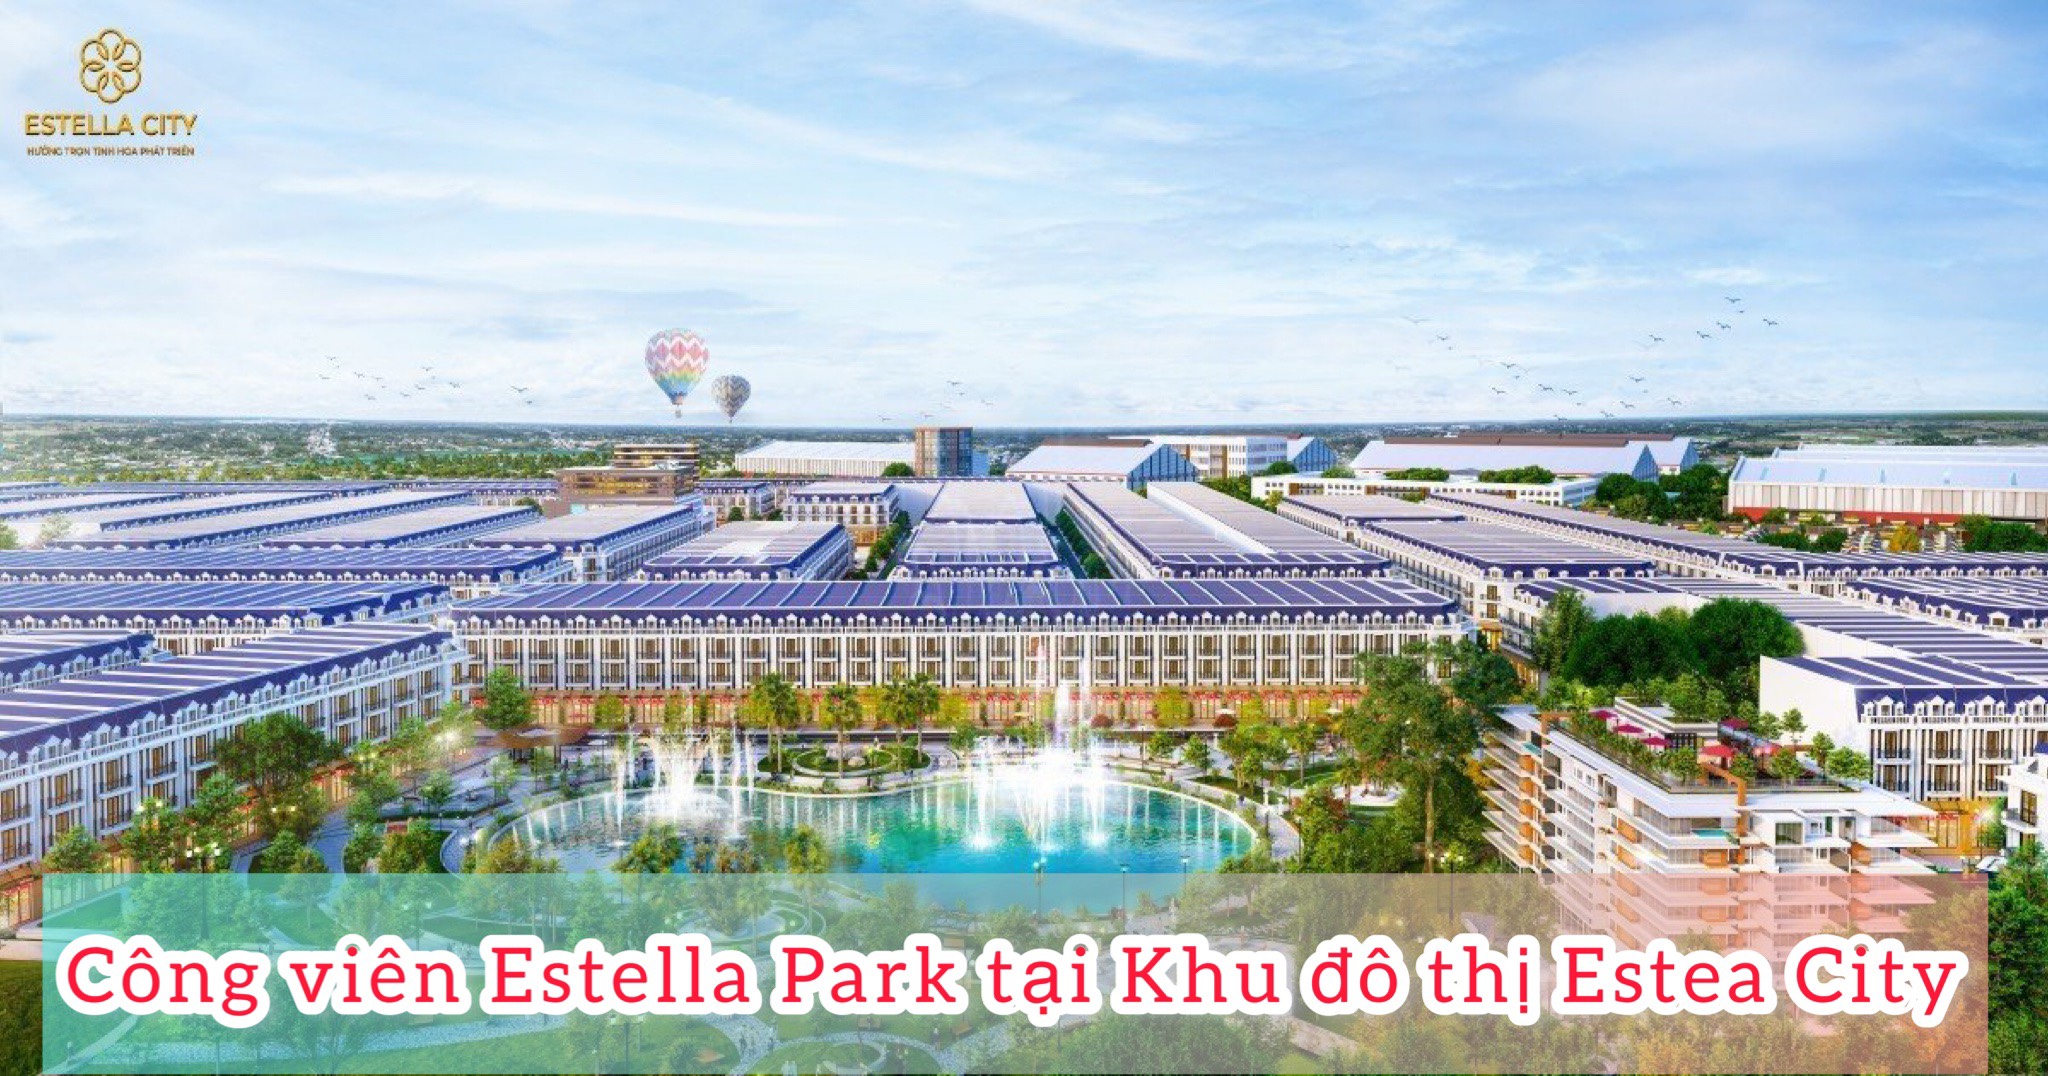 Công viên Estella Park tại khu đô thị Estella City mang đến không gian sống xanh mát cho cư dân.